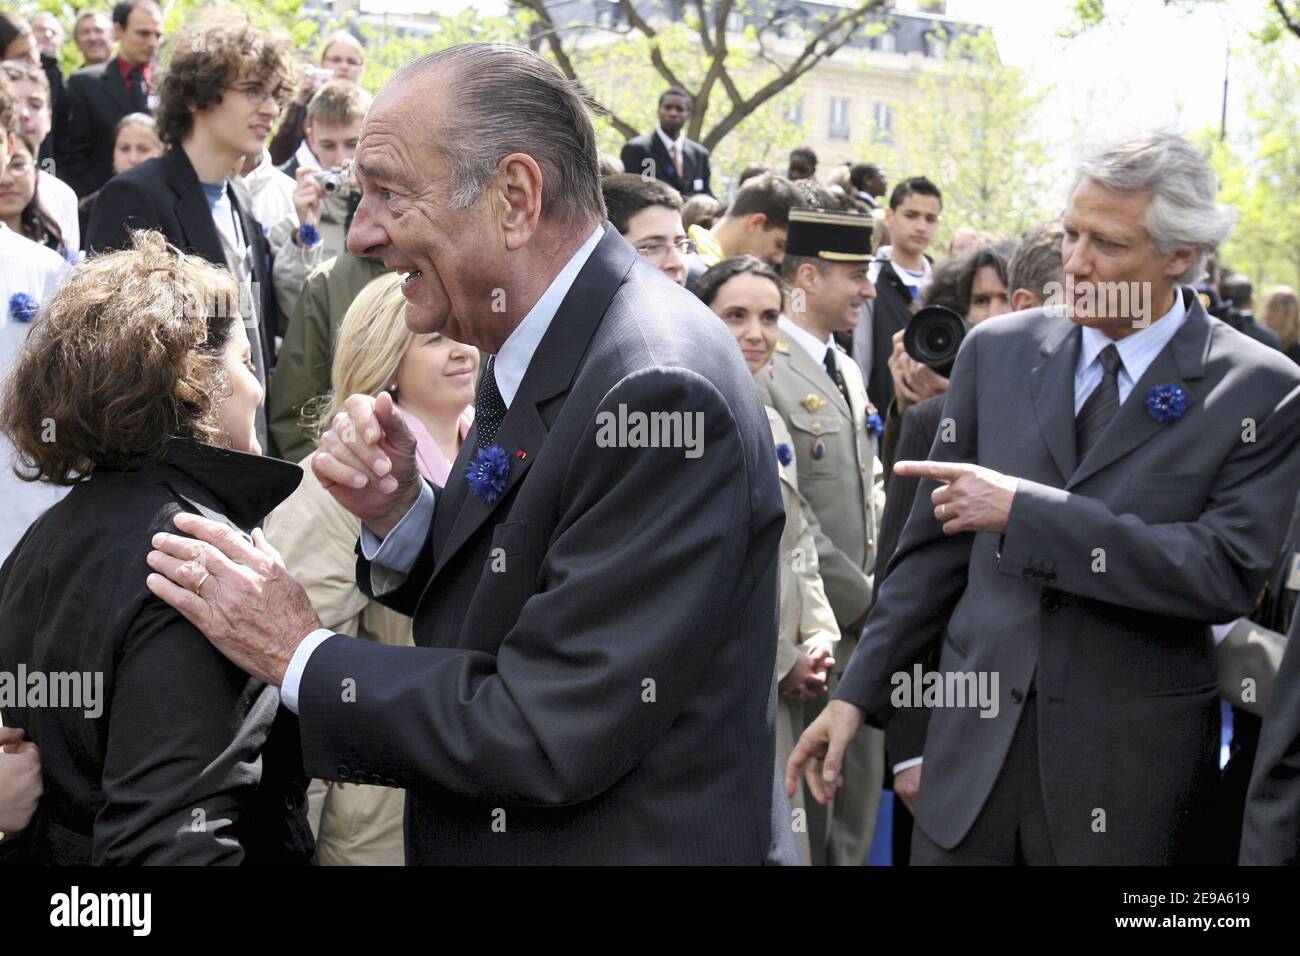 Le Président français Jacques Chirac et le Premier ministre français Dominique de Villepin assistent à la cérémonie marquant la fin de la Seconde Guerre mondiale qui s'est tenue à l'Arc de Triomphe à Paris, en France, le 8 mai 2006. Photo de Ludovic REA/POOL/ABACAPRESS.COM Banque D'Images